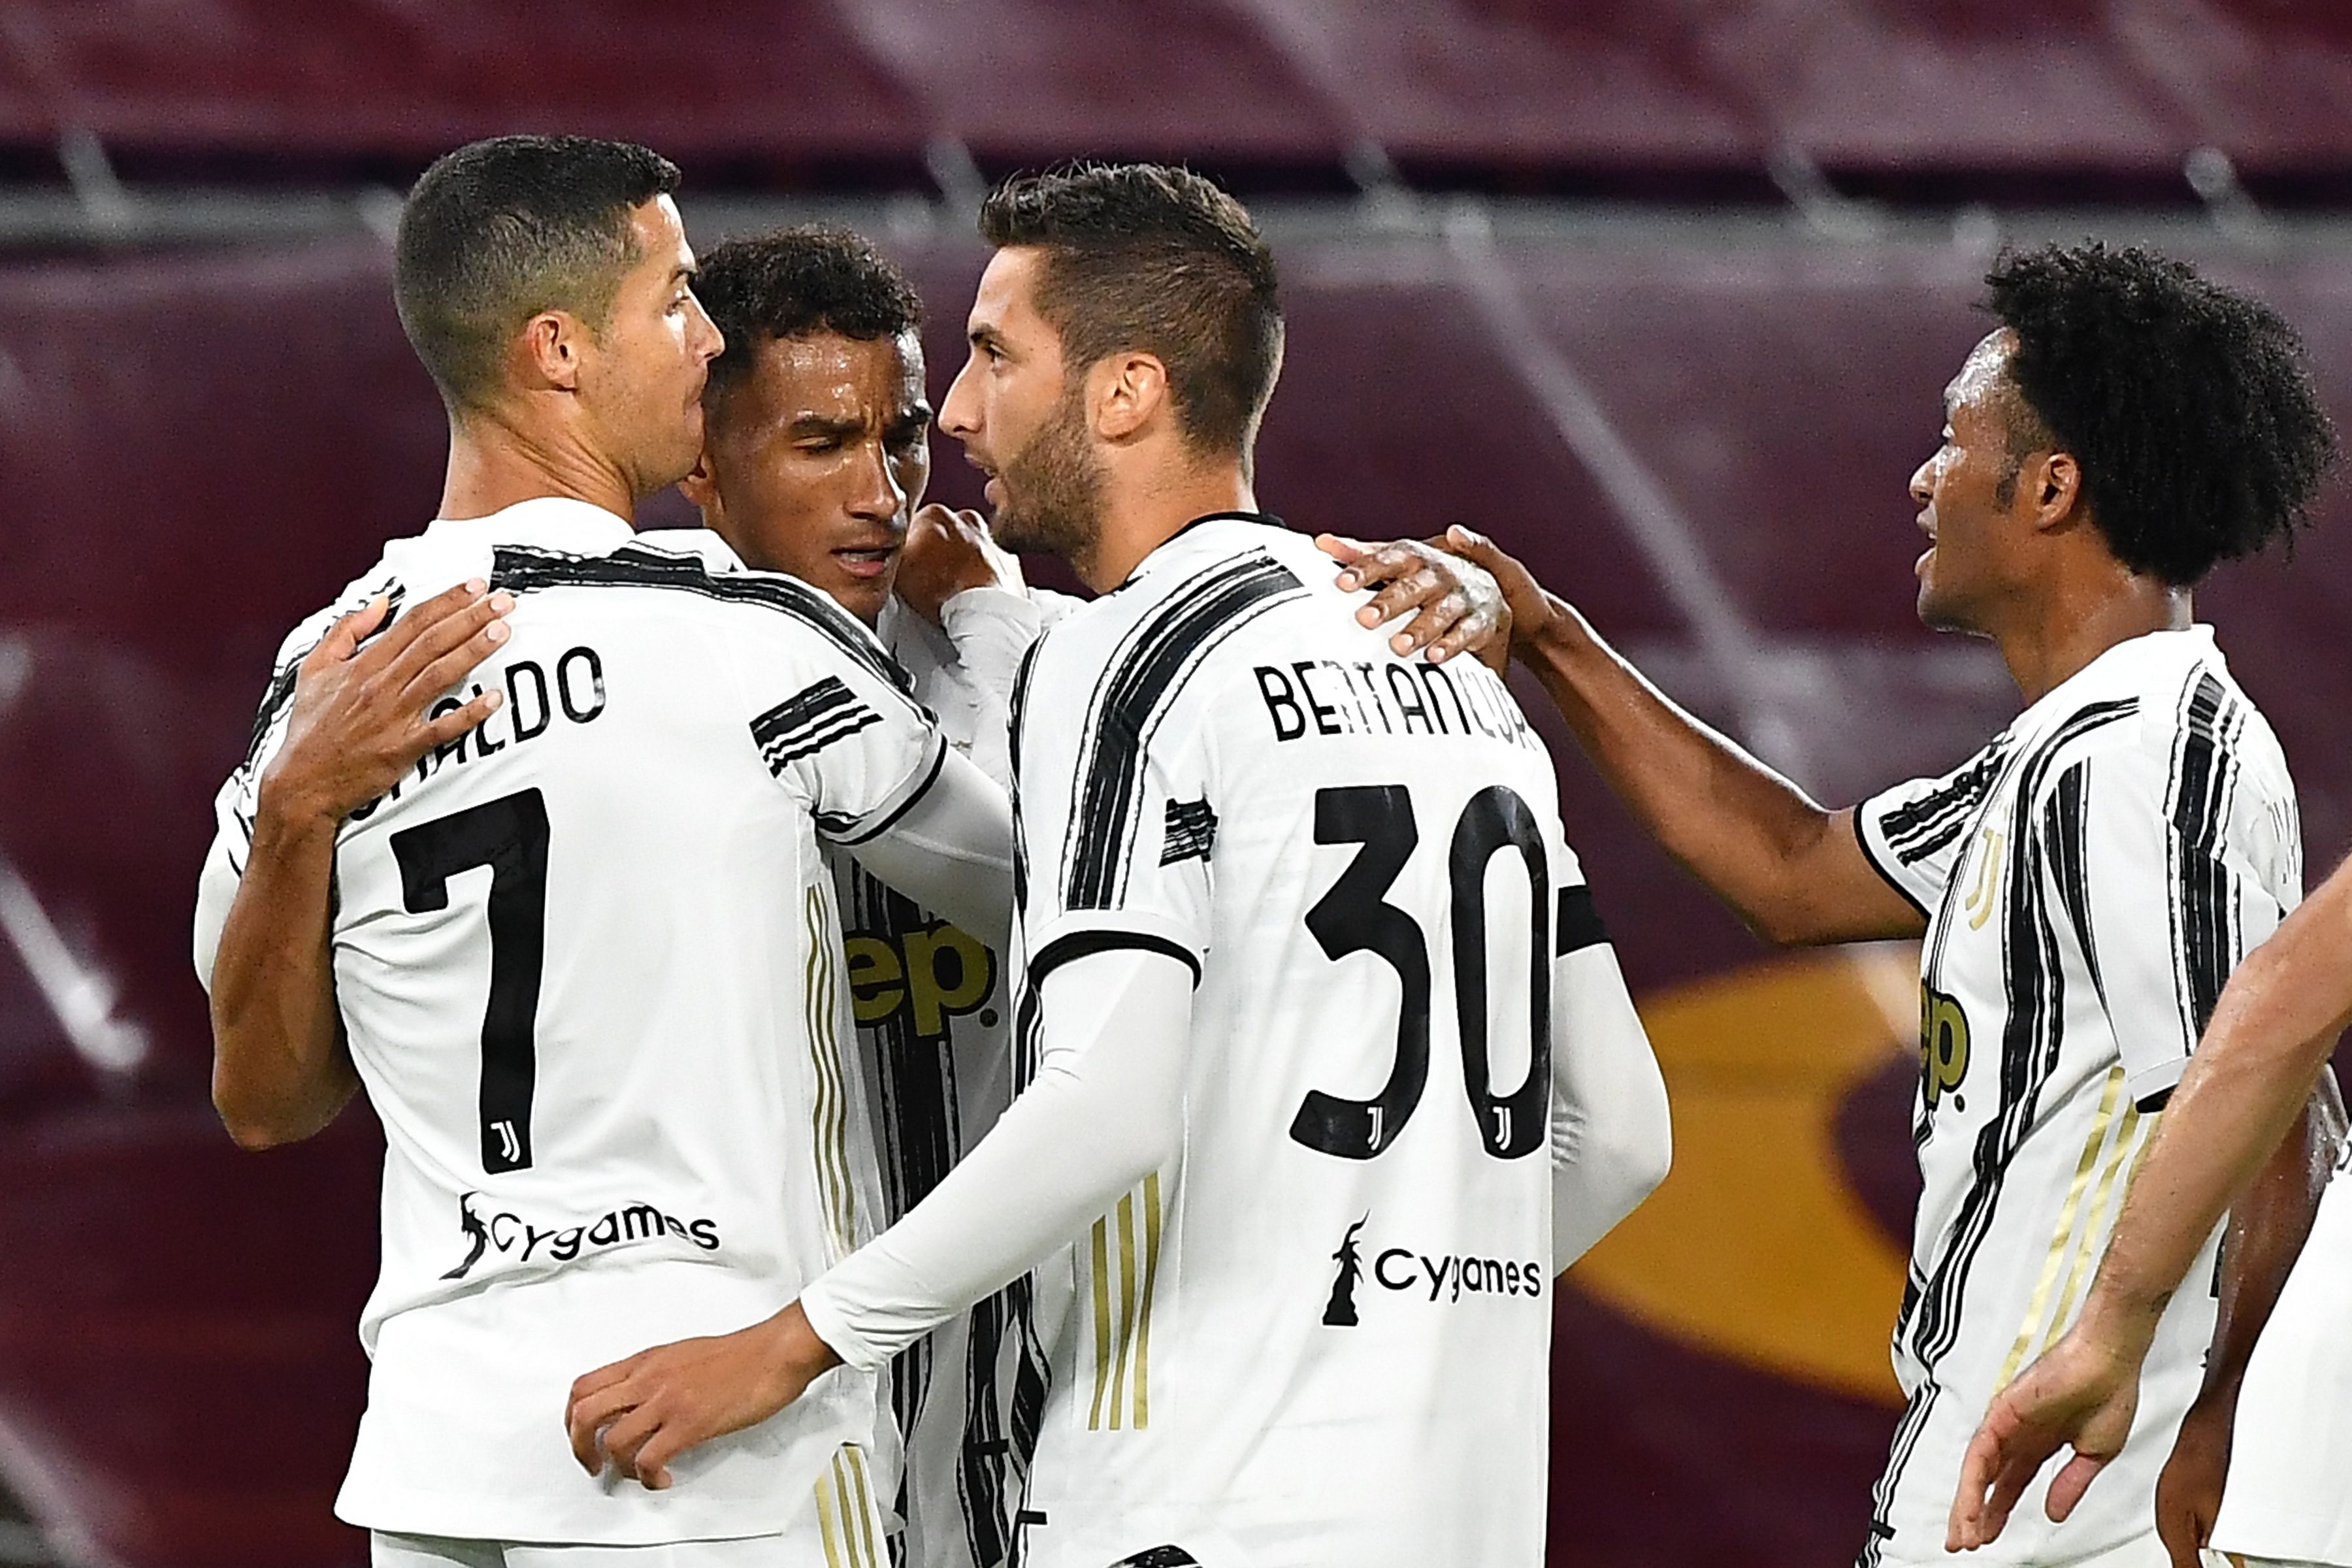 La Juventus informó sobre dos casos positivos de covid-19 dentro de su institución, los cuales no habrían tenido contacto con jugadores y cuerpo técnico. (Foto Prensa Libre: AFP)